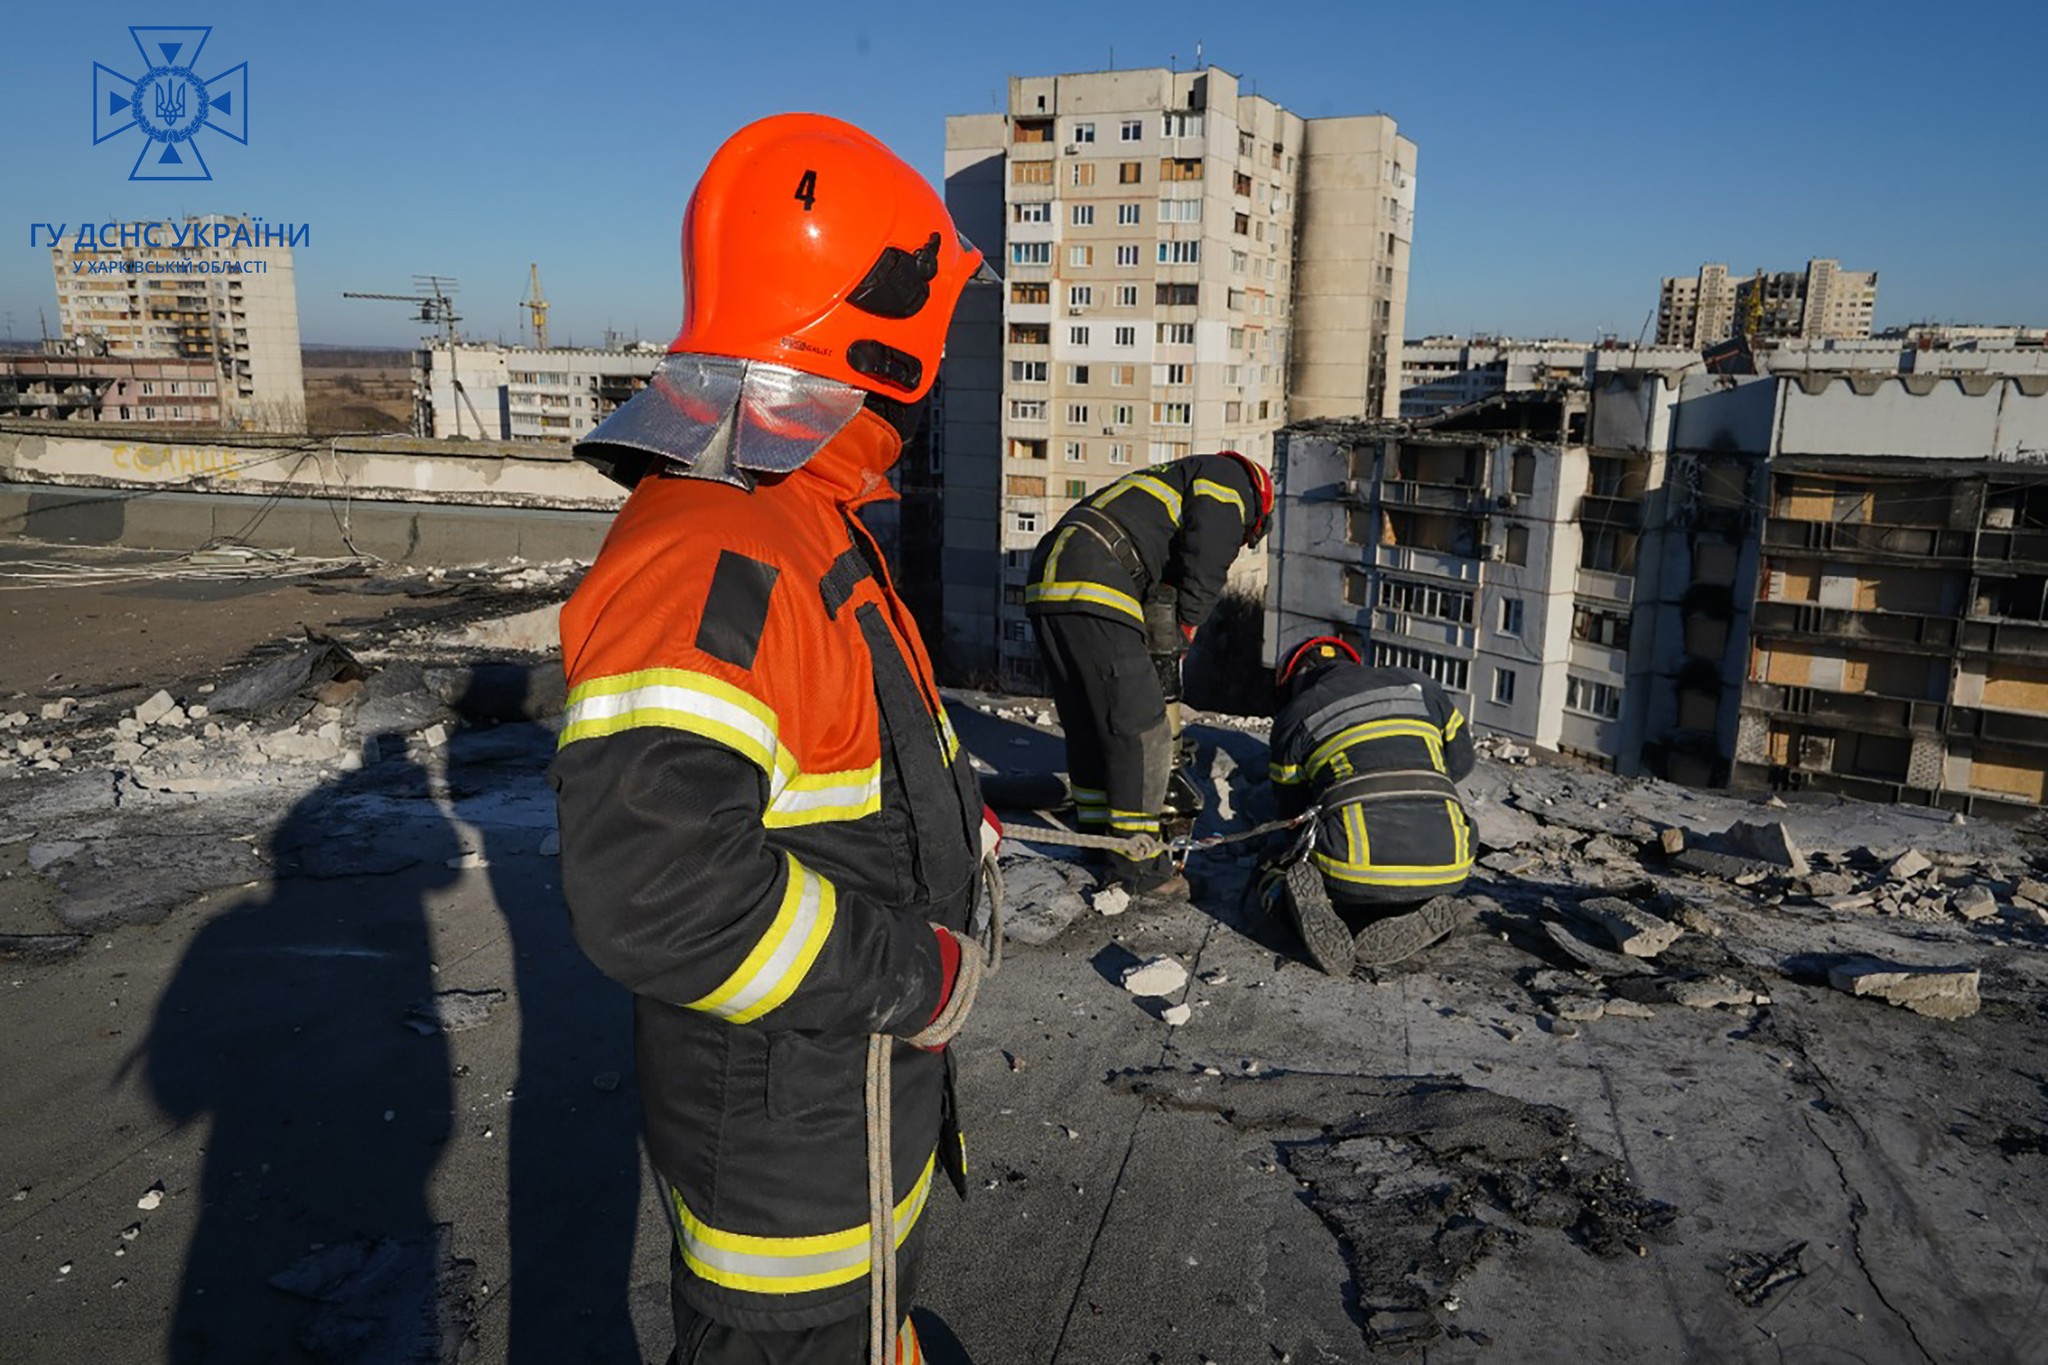  В Харькове разбирают завалы зданий 23 января для дальнейшего ремонта 8